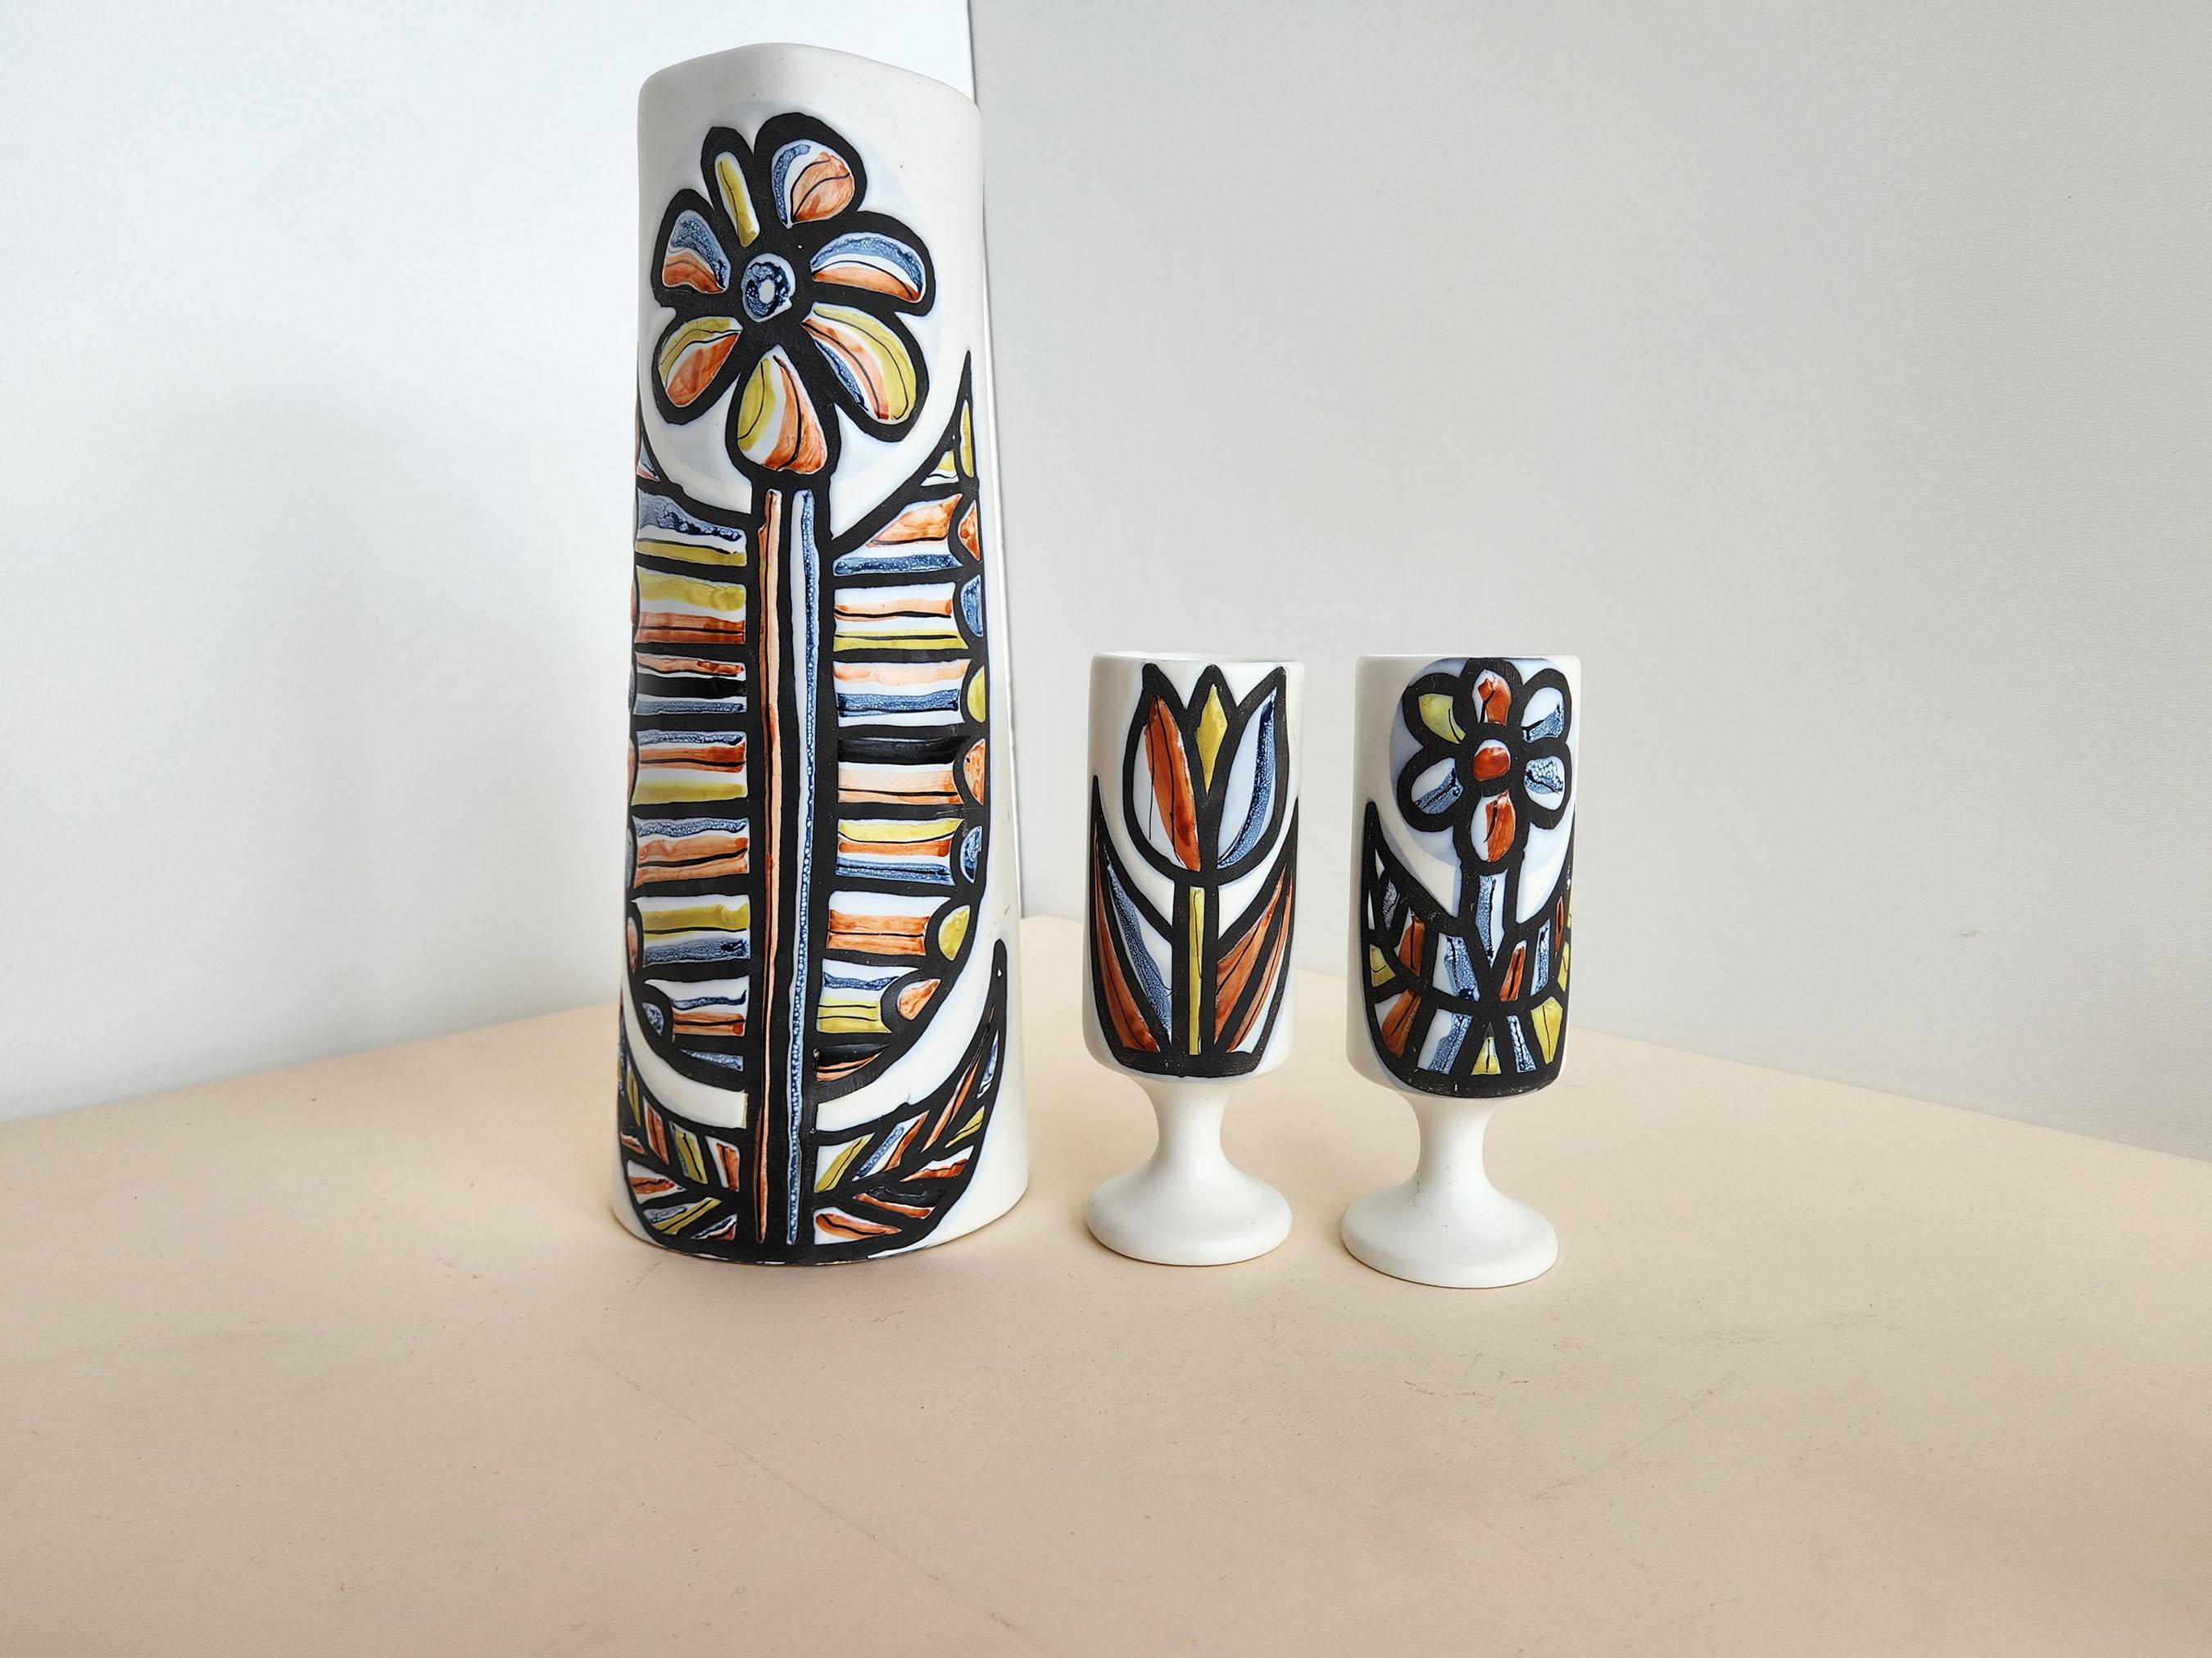 Pichets et 2 gobelets en céramique vintage avec motif de fleurs par Roger Capron.  Vallauris, France.

Les dimensions des gobelets sont les suivantes  Hauteur : 7